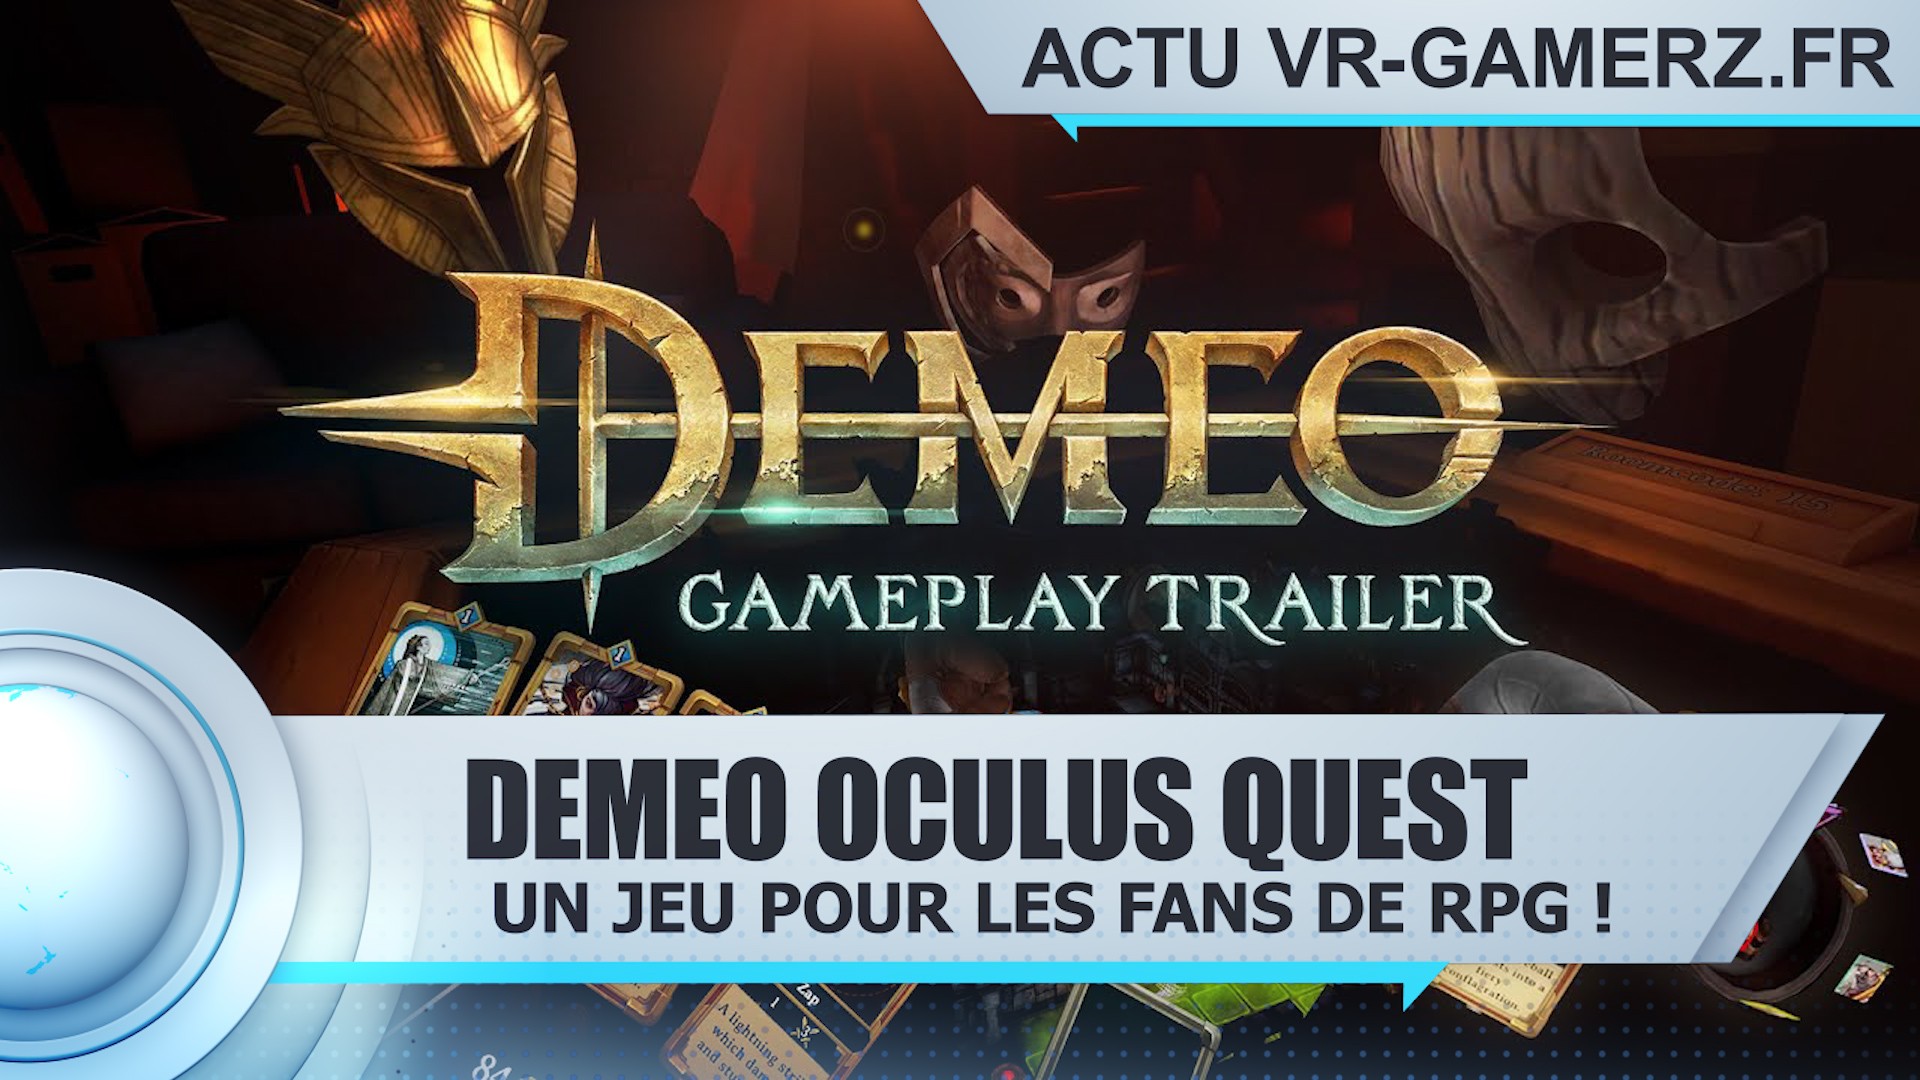 Demeo Oculus quest : Un jeu pour les fans de RPG !